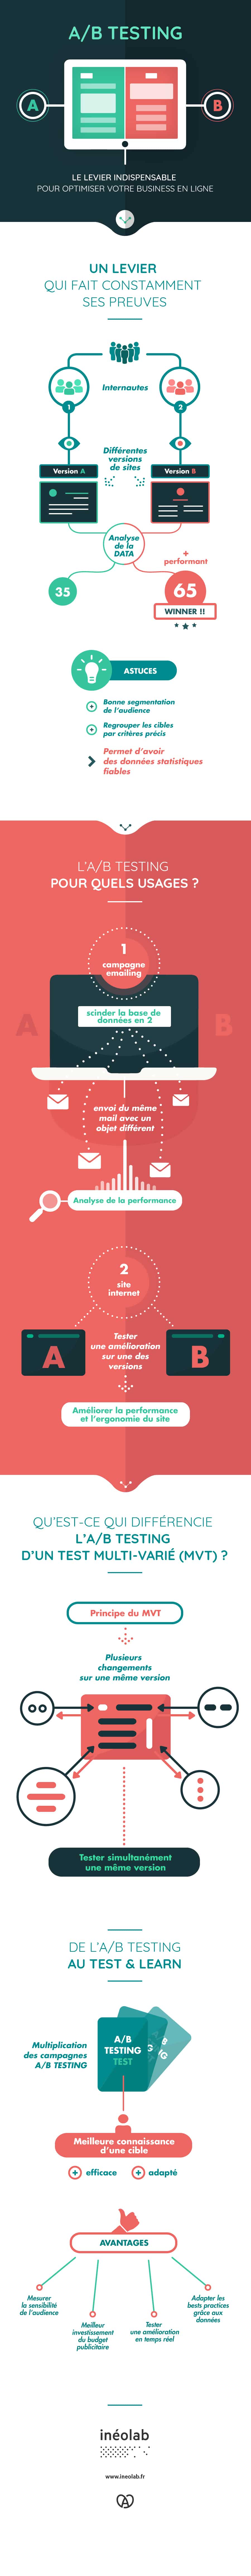 Infographie(s) : L'A/B Testing en une image